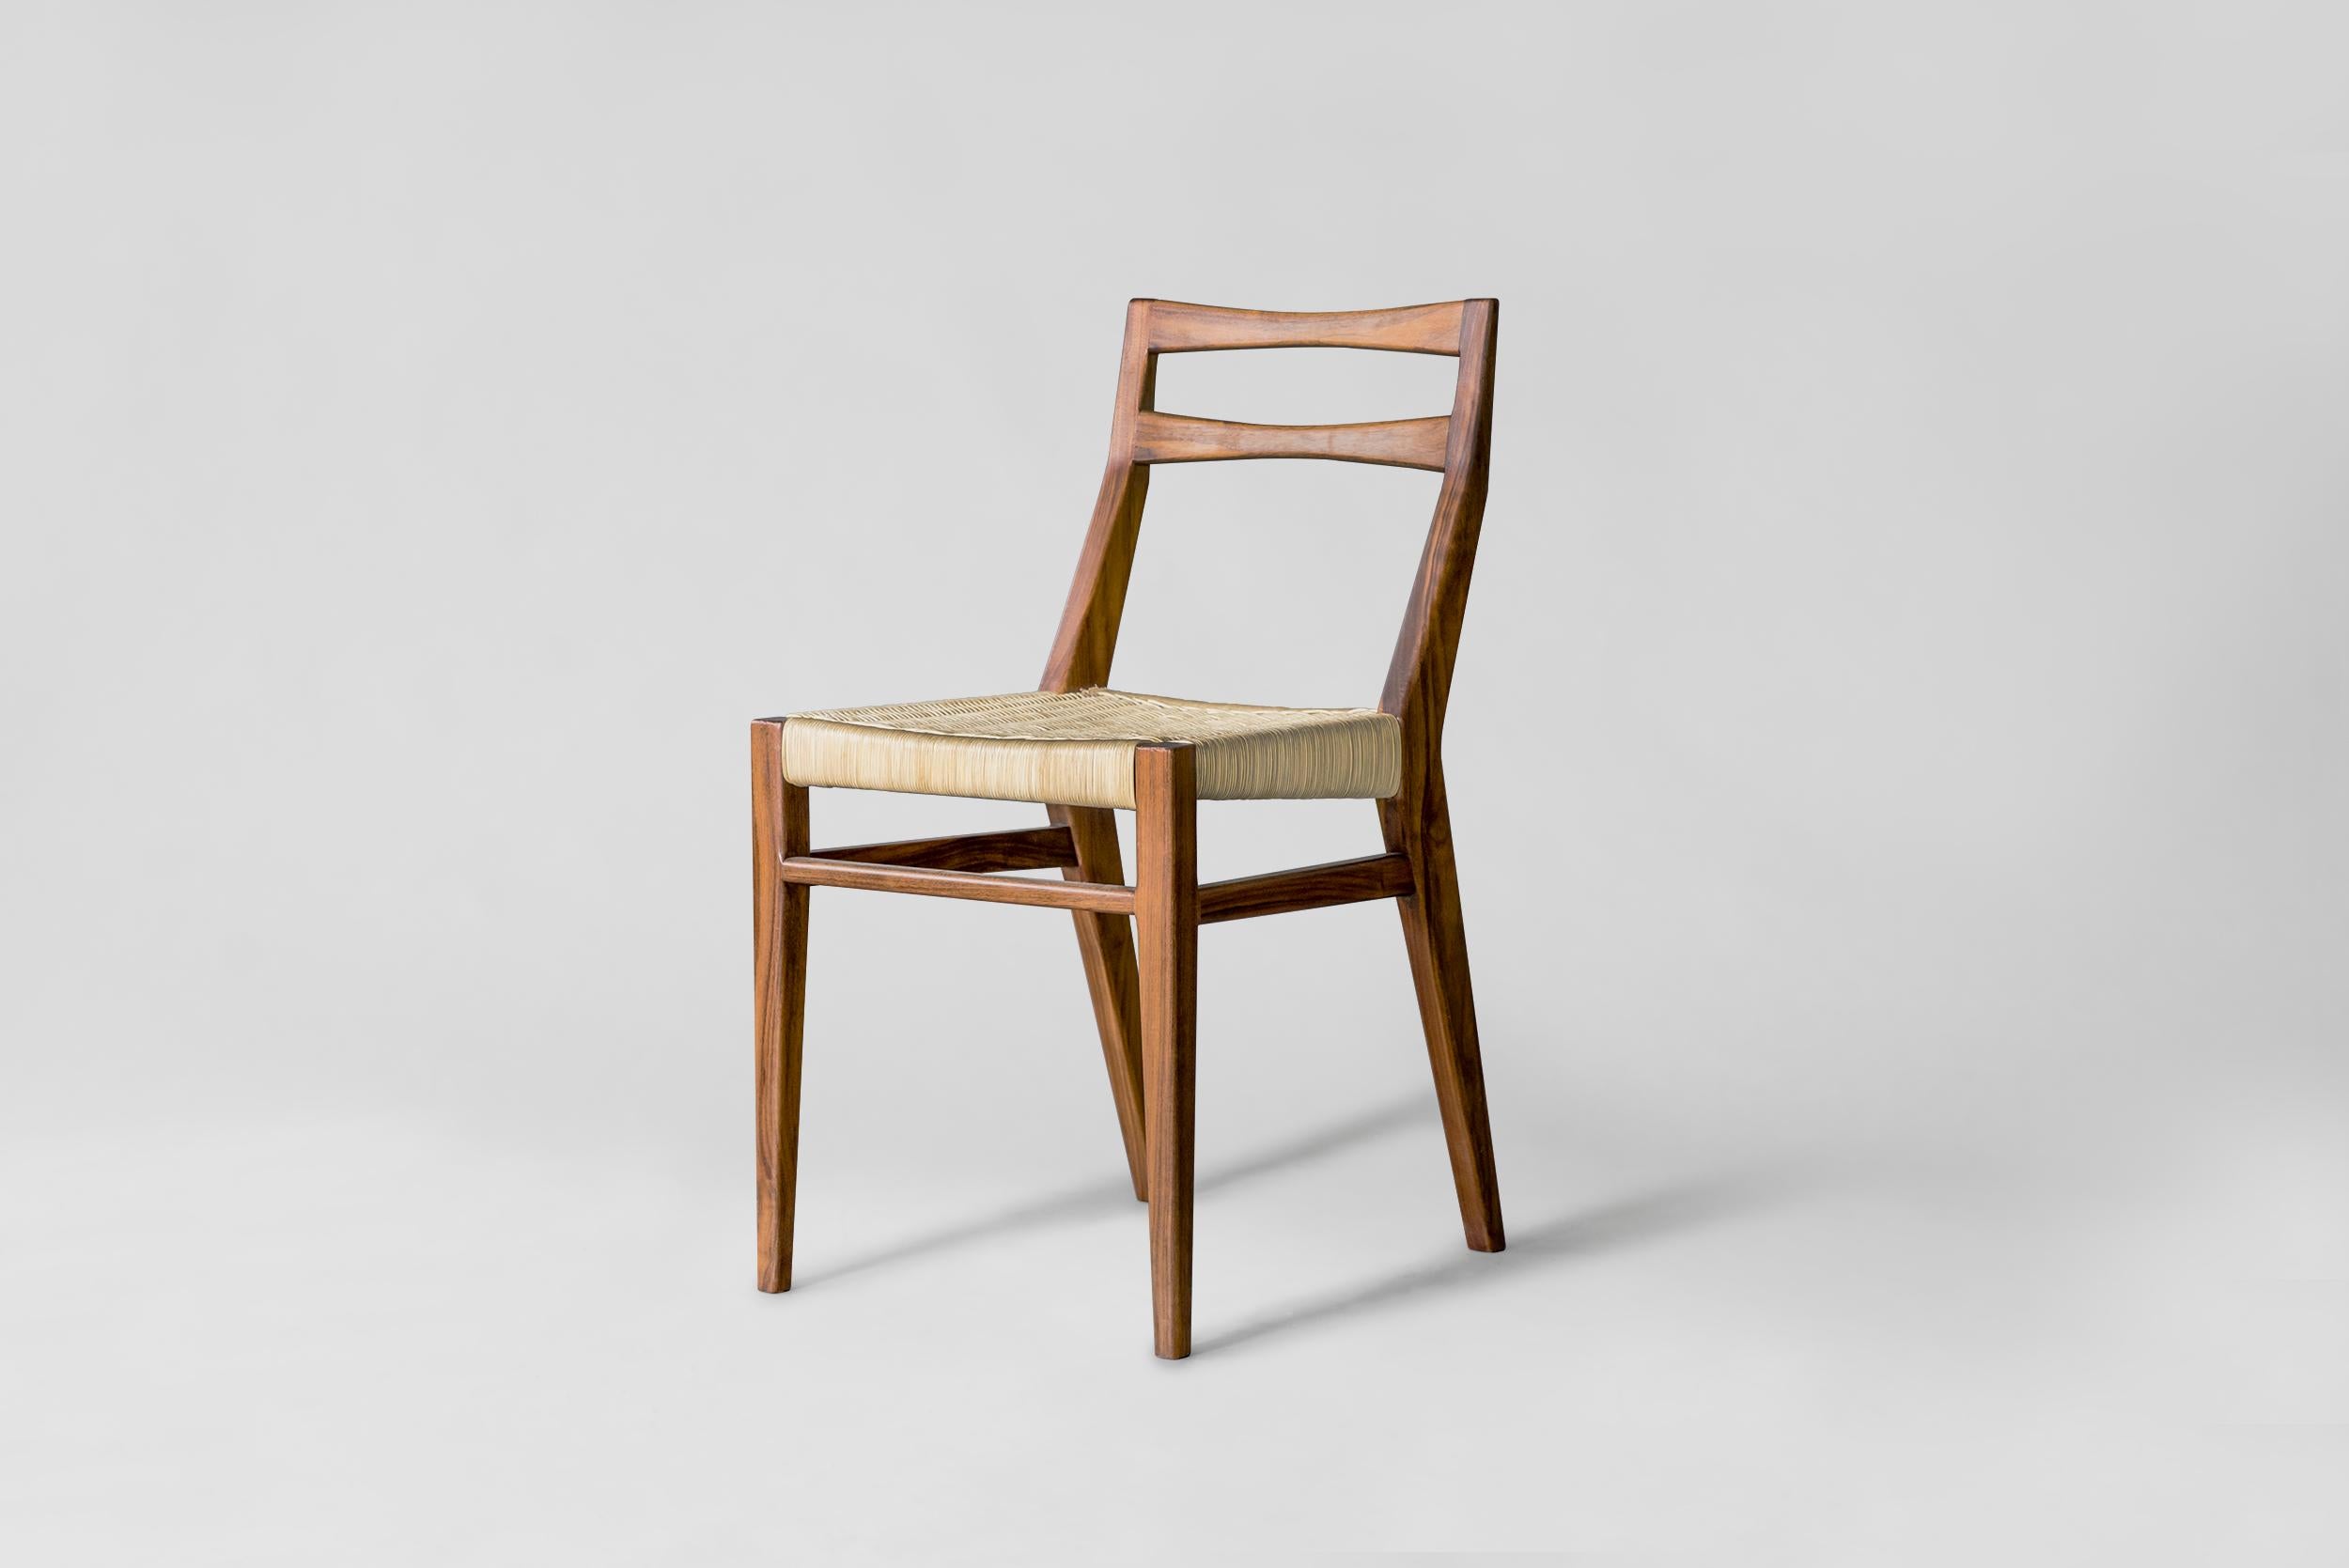 Chaise de salle à manger Agnes par Atra Design
Dimensions : P 44,9 x L 41,9 x H 82 cm
MATERIAL : acajou, rotin.
Disponible en assise en rotin ou en corde.

Atra Design
Nous sommes Atra, une marque de meubles produite par Atra form A, un site